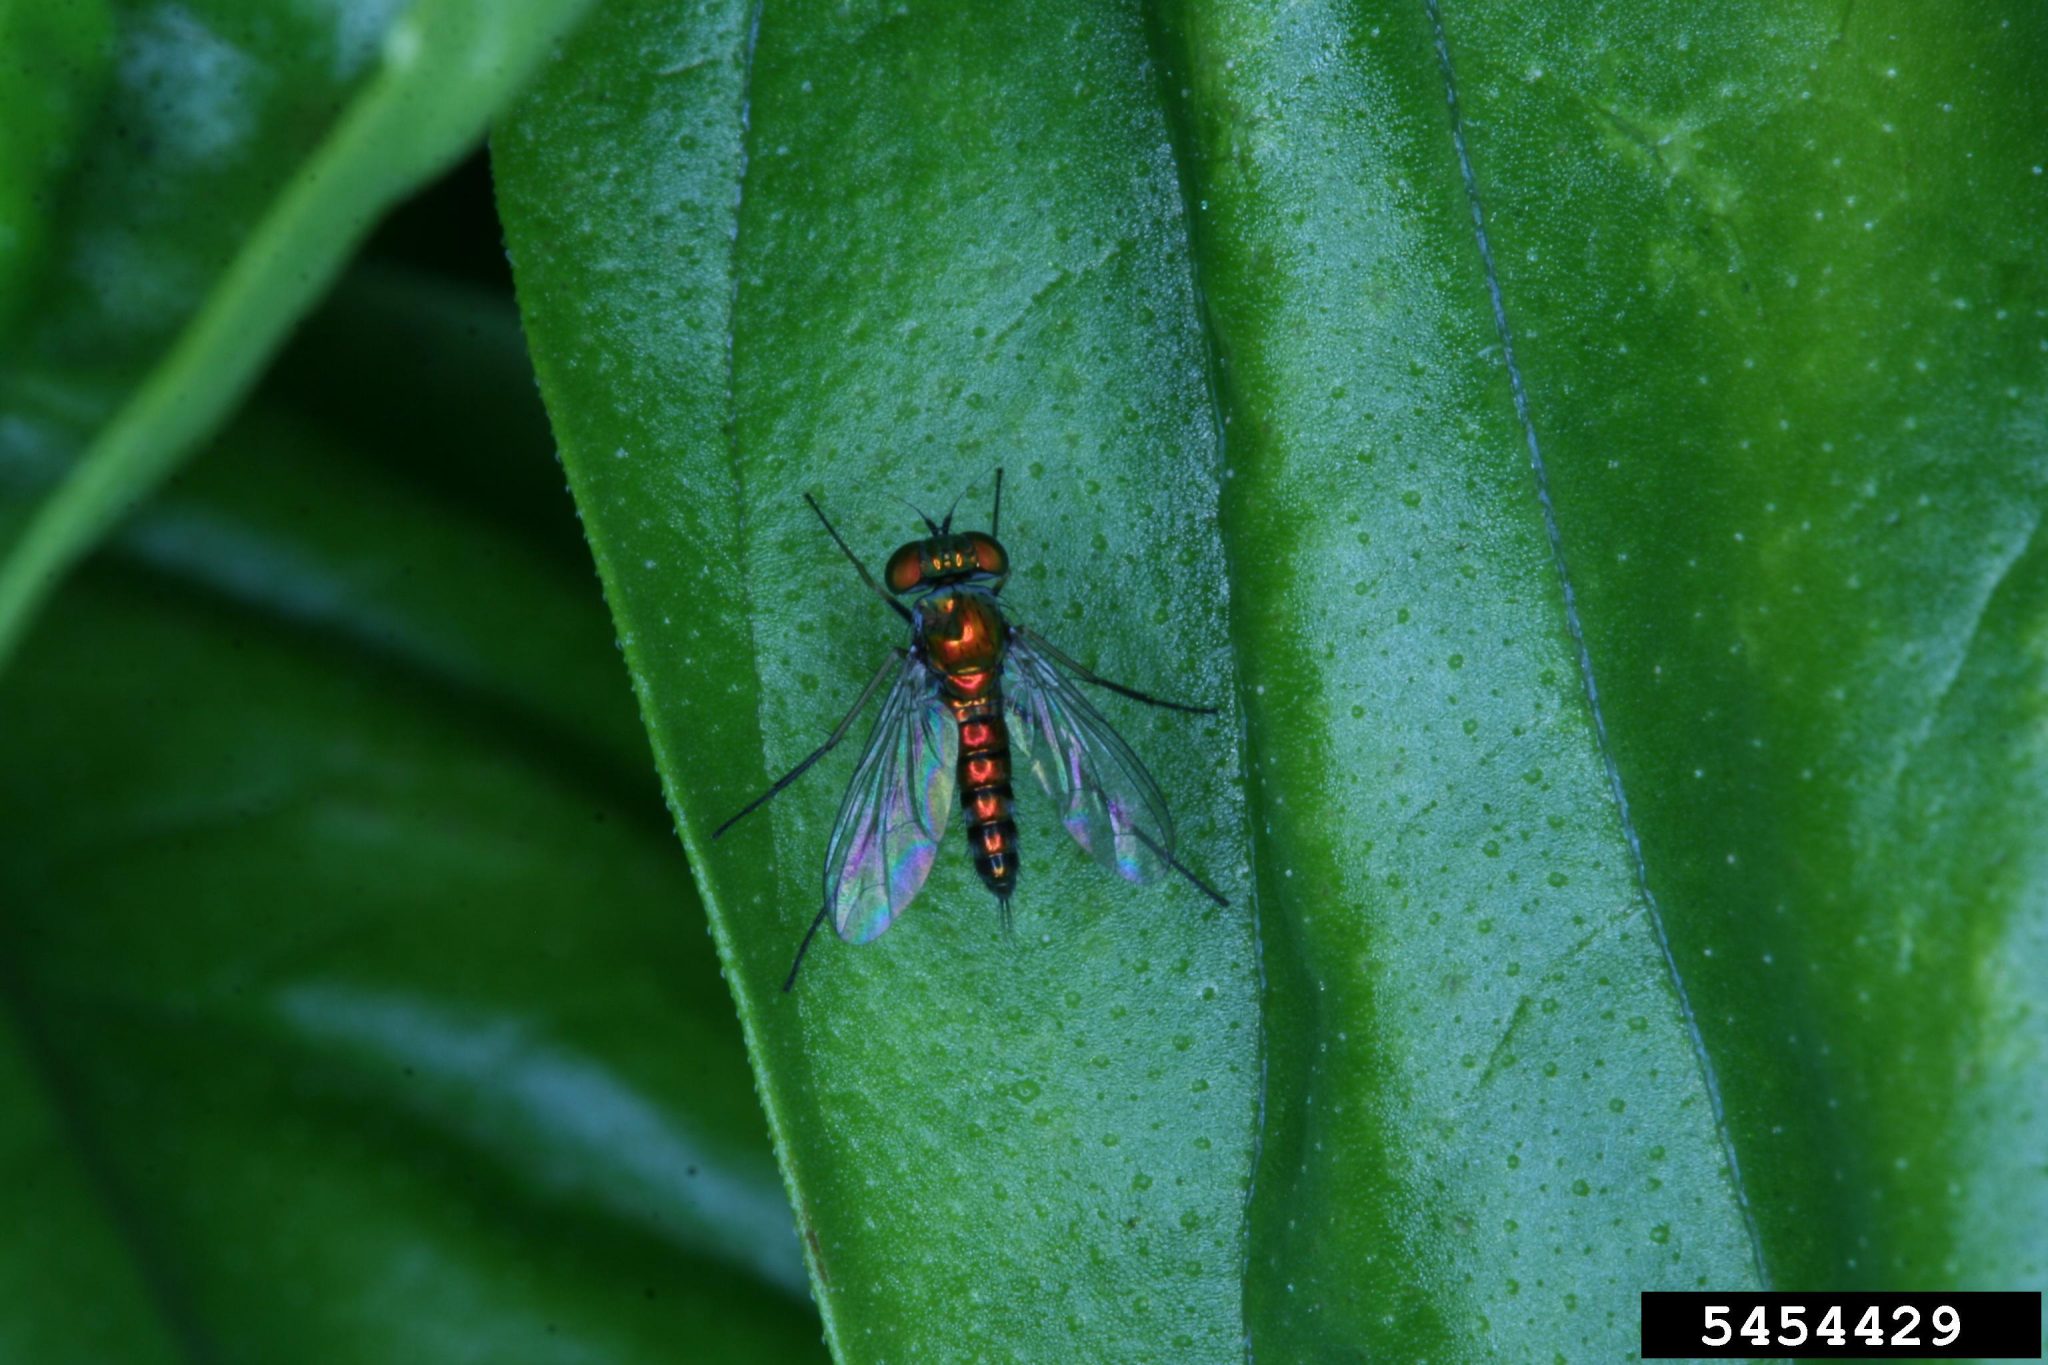 species identification - Identify little green long legged bug